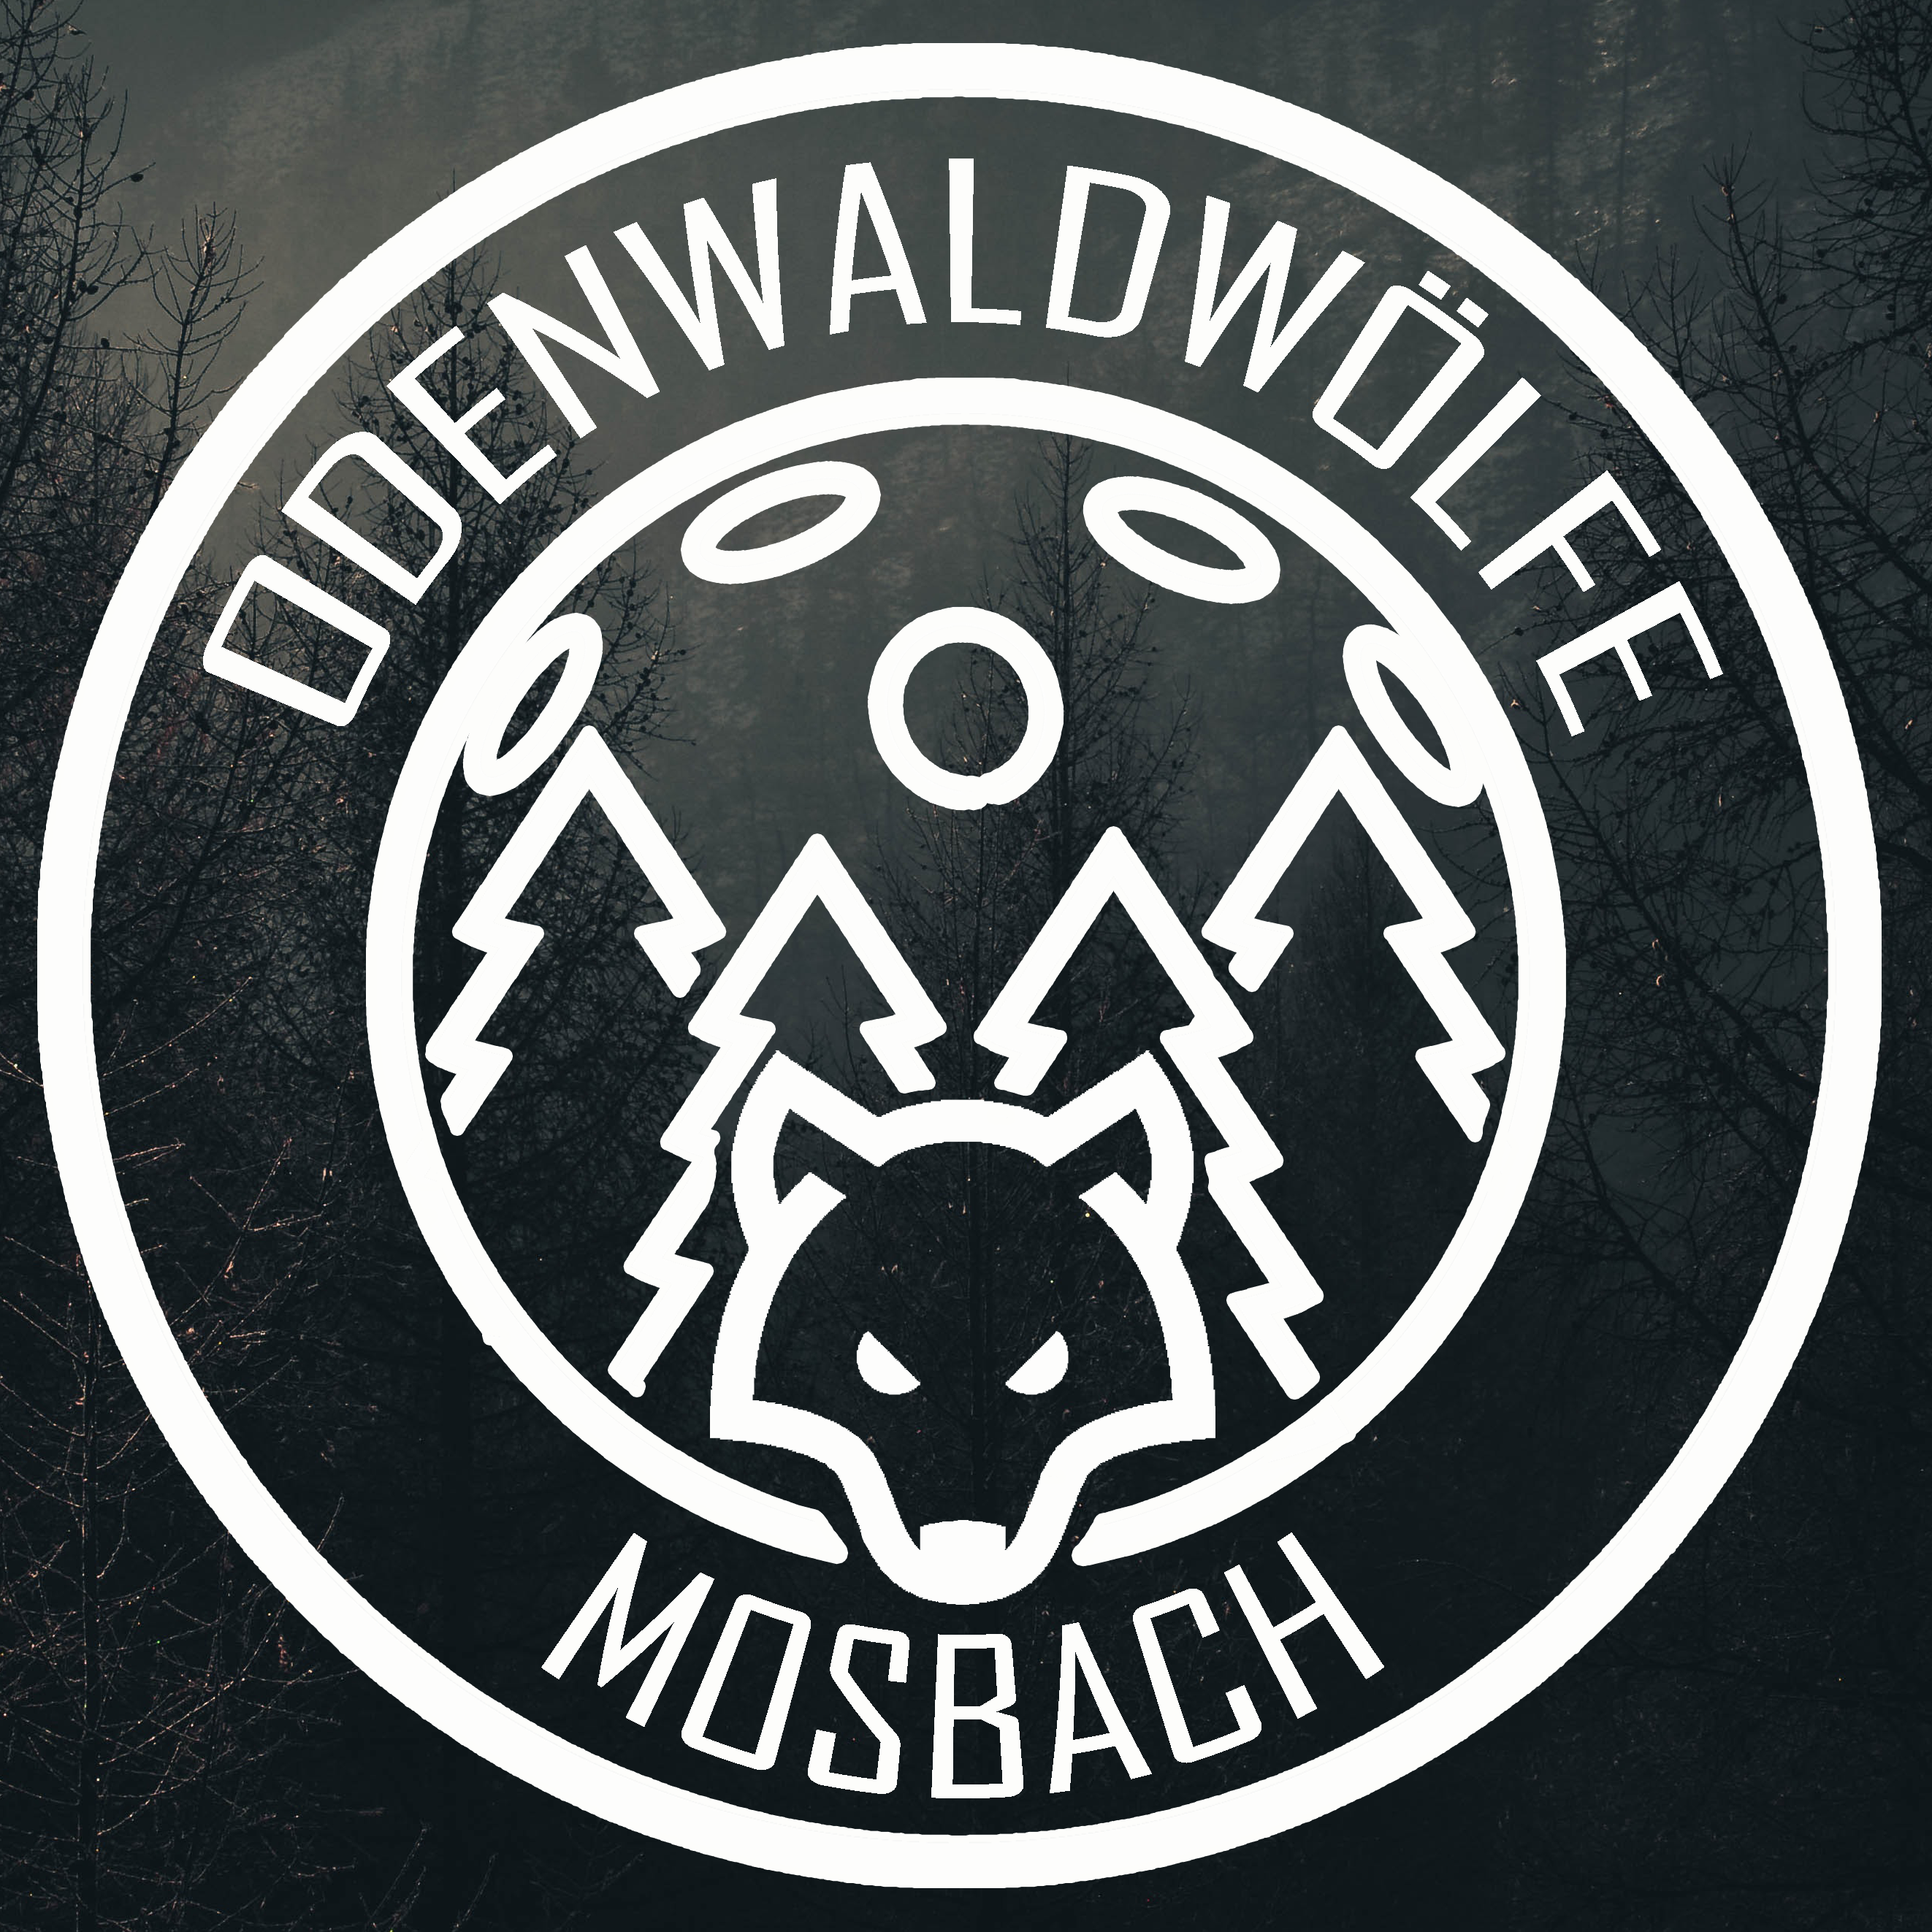 Logo der Odenwaldwölfe Mosbach